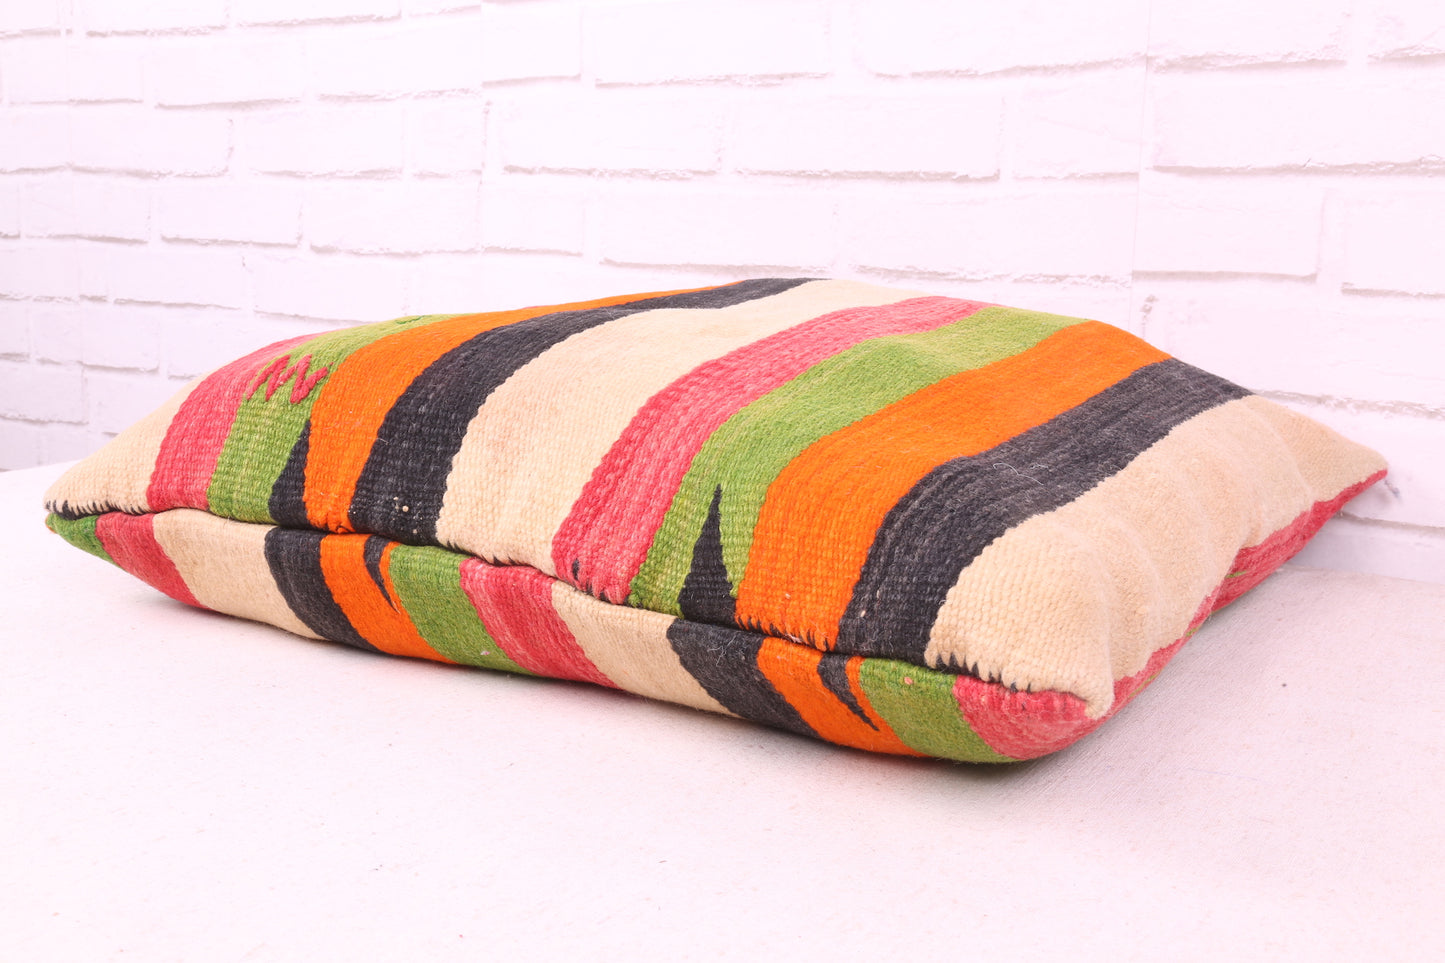 Moroccan Square Multicolored Pillow 19.6 inches X 20.8 inches